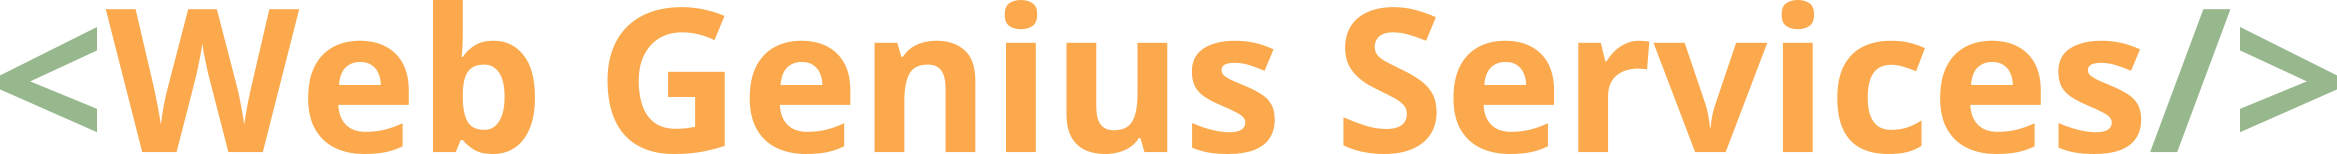 Web Genius Services logo Mauritius